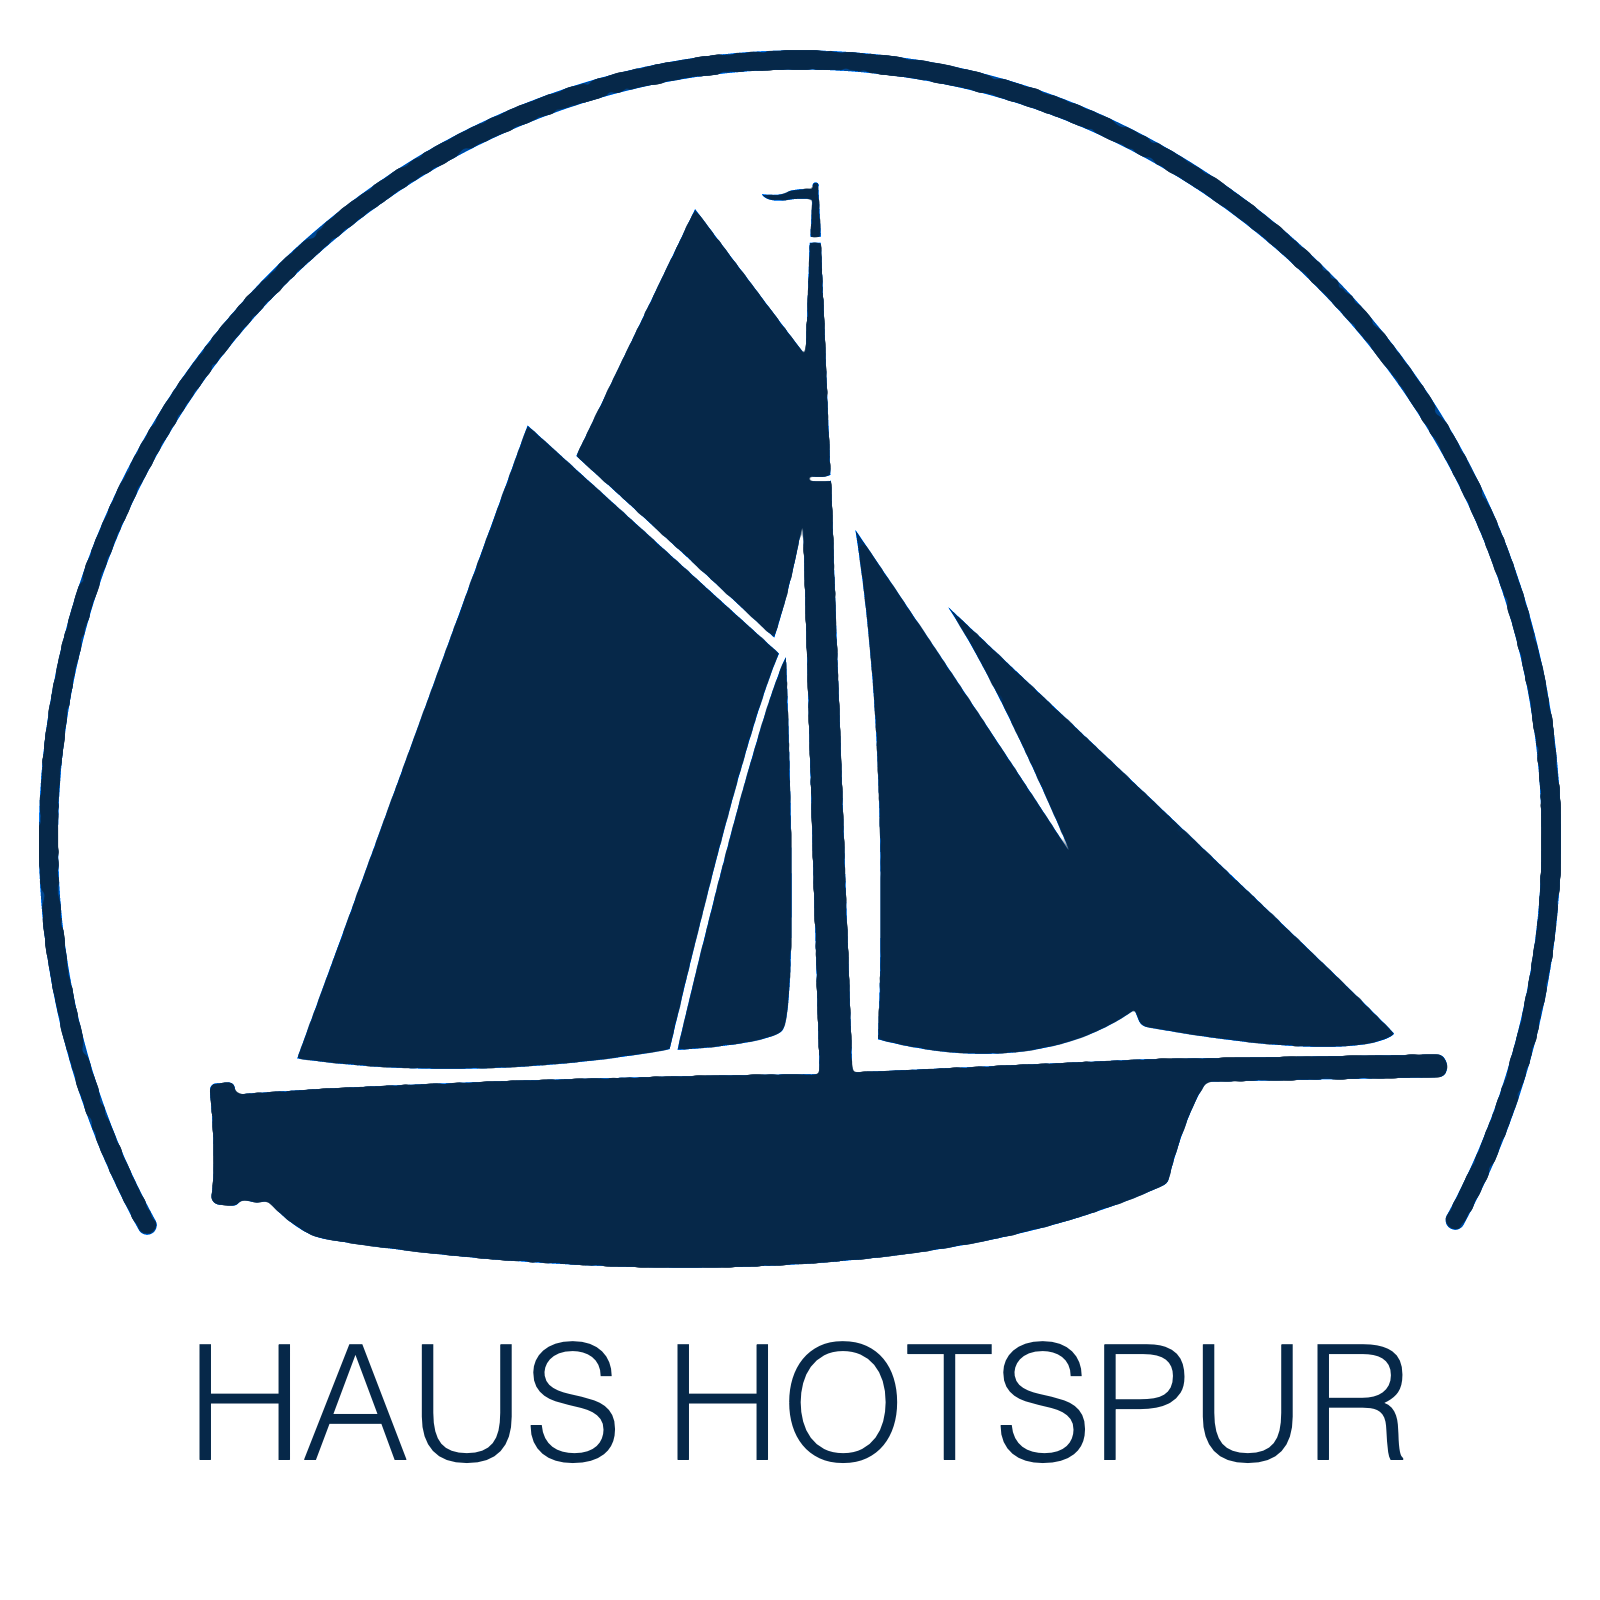 Der Austernfischer Hotspur - Namensgeber für das Haus Hotspur